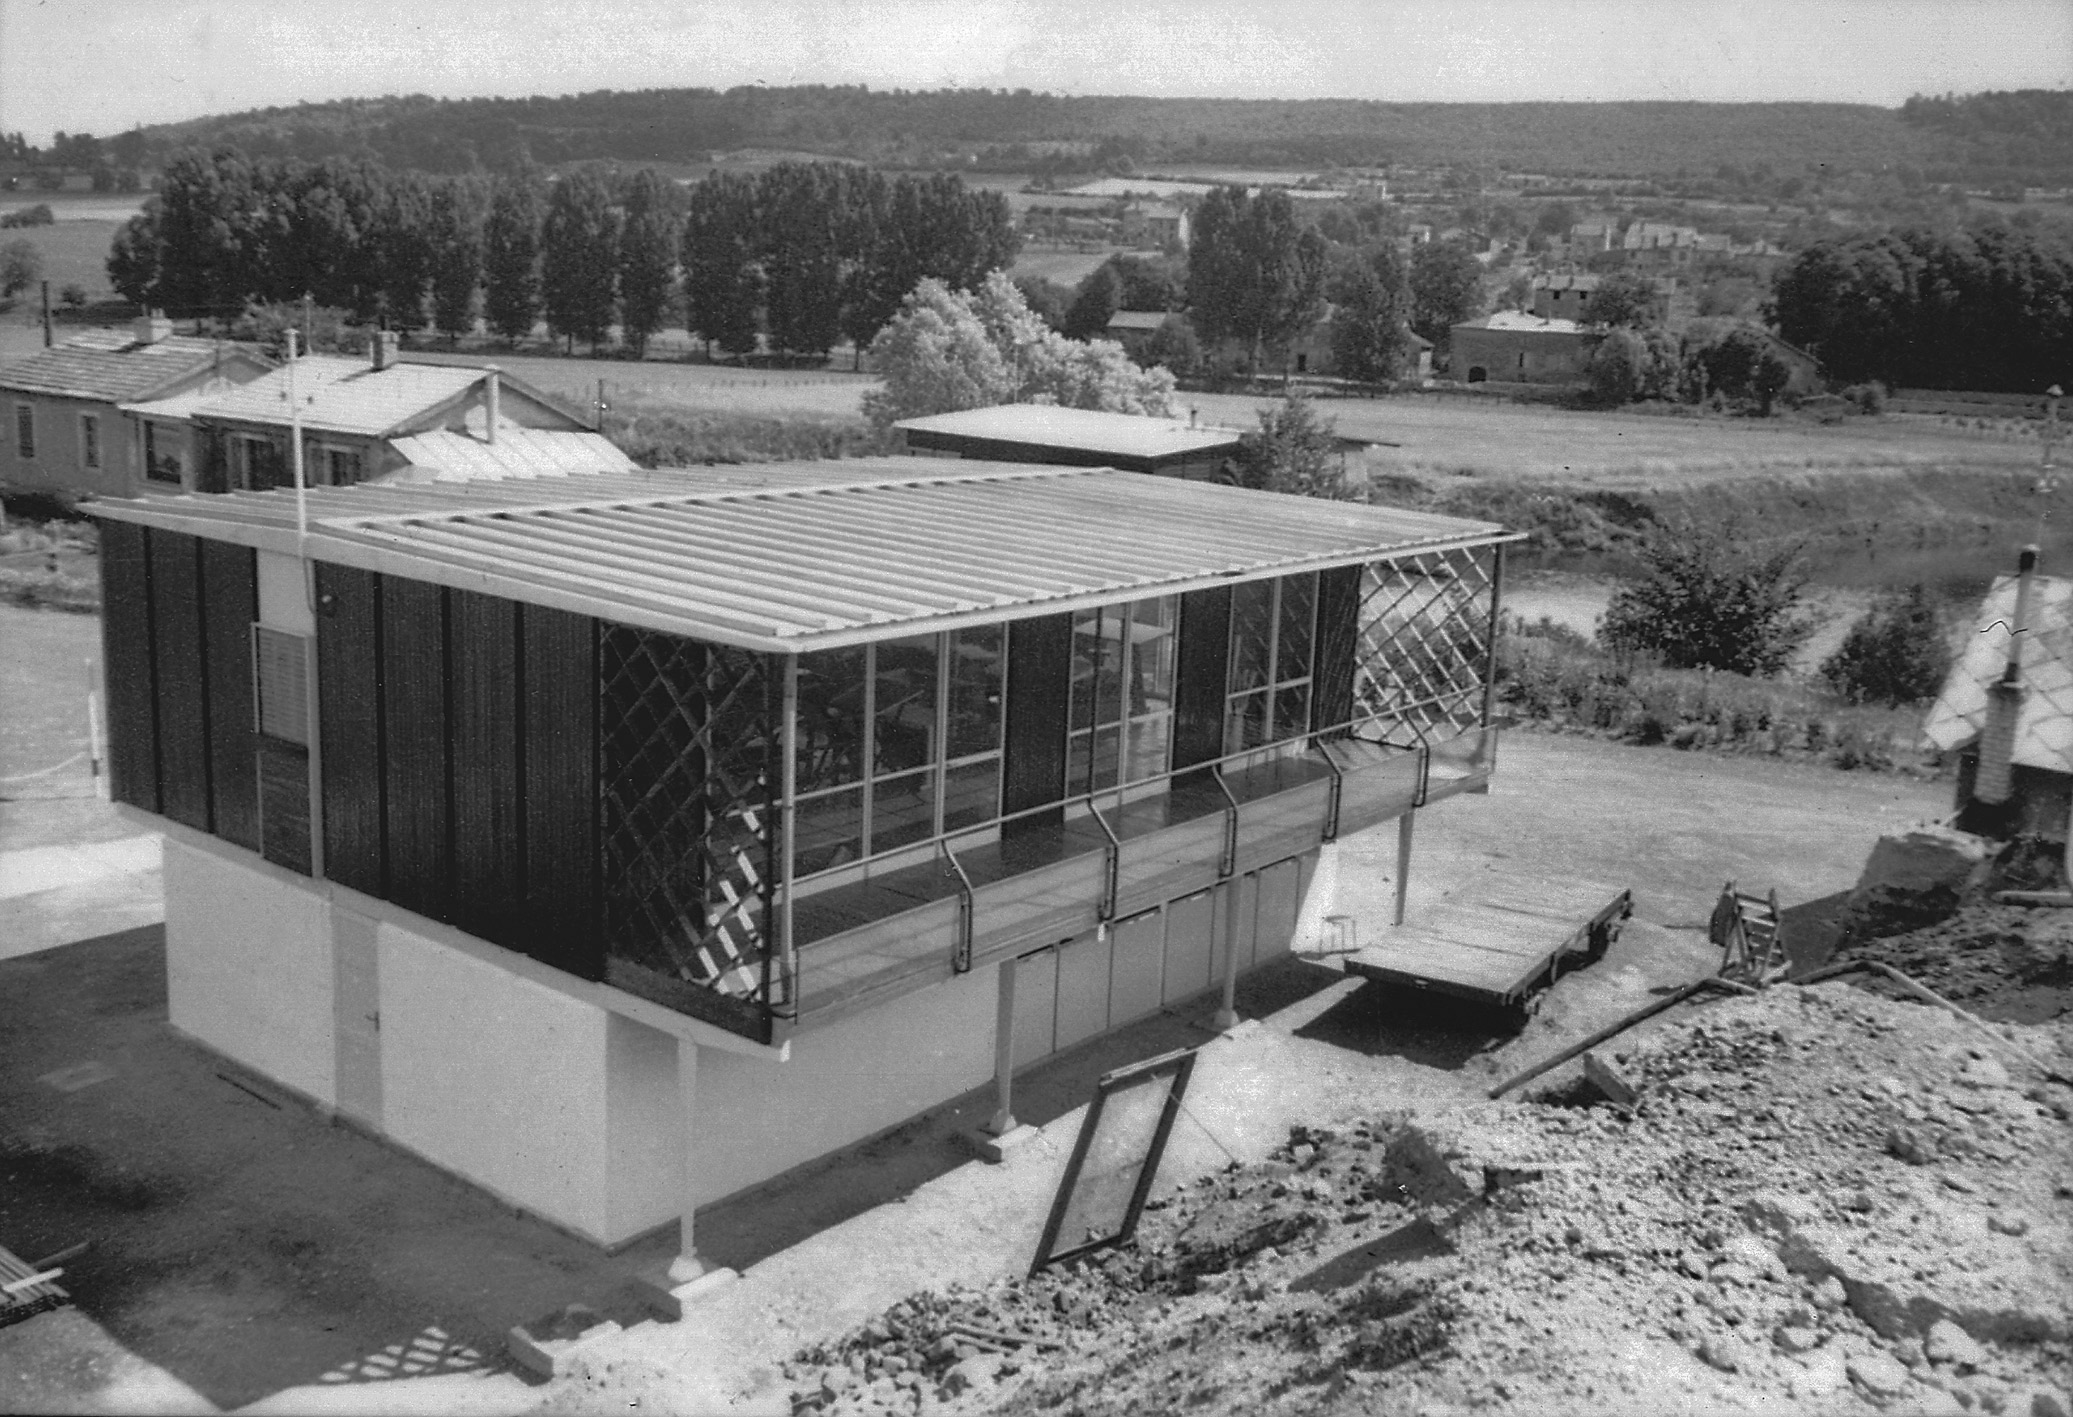 Bureau d’études des Ateliers Jean Prouvé. Montage du bâtiment 8x12 sur le site des Ateliers Jean Prouvé, Maxéville, 1952.